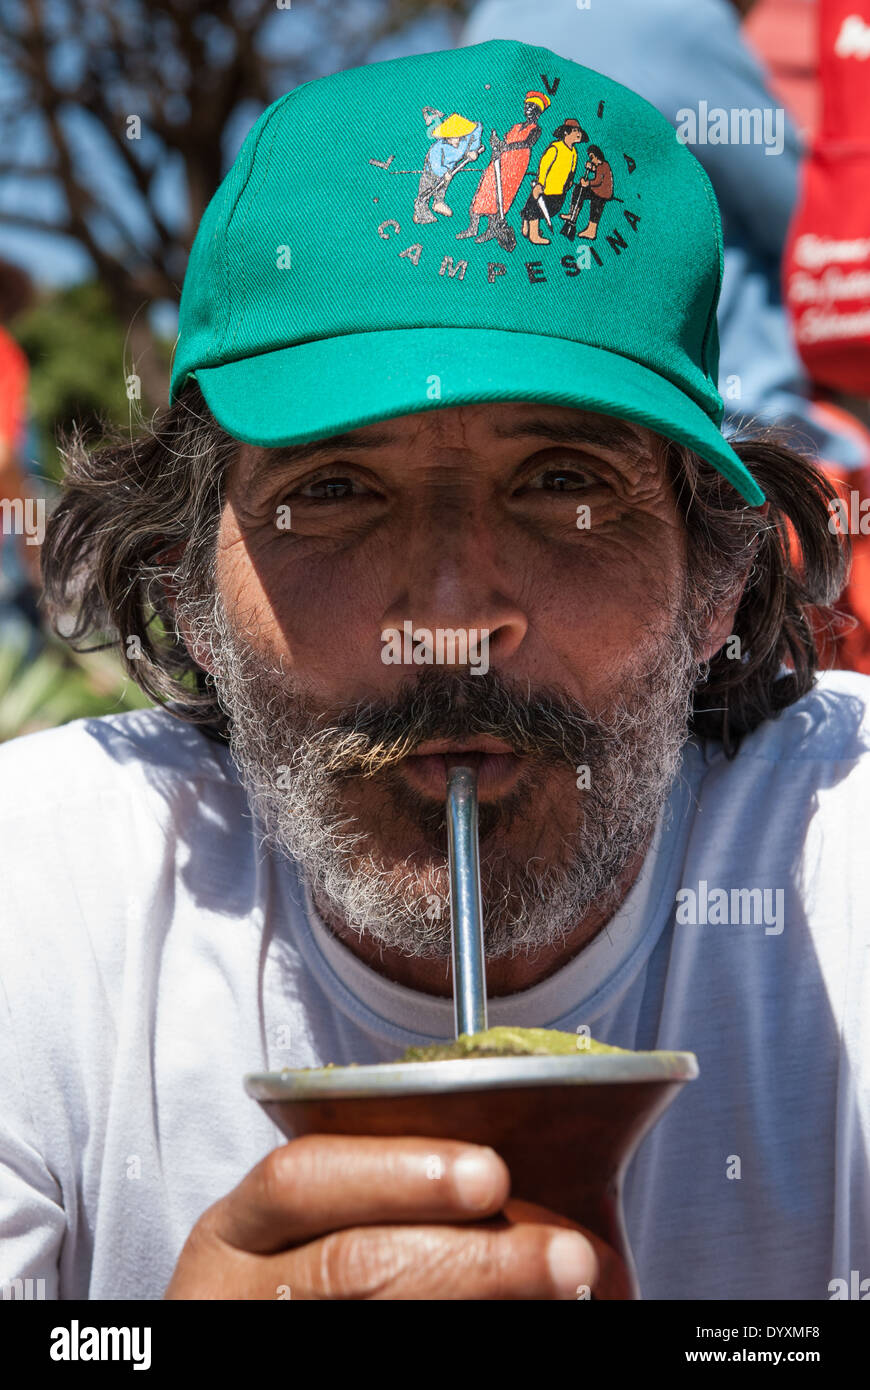 Brasilia, Brasil. Barbado demostrador de la Vía Campesina Via Campesina movimiento con una gorra de béisbol bebiendo mate desde un chimarrao. Foto de stock